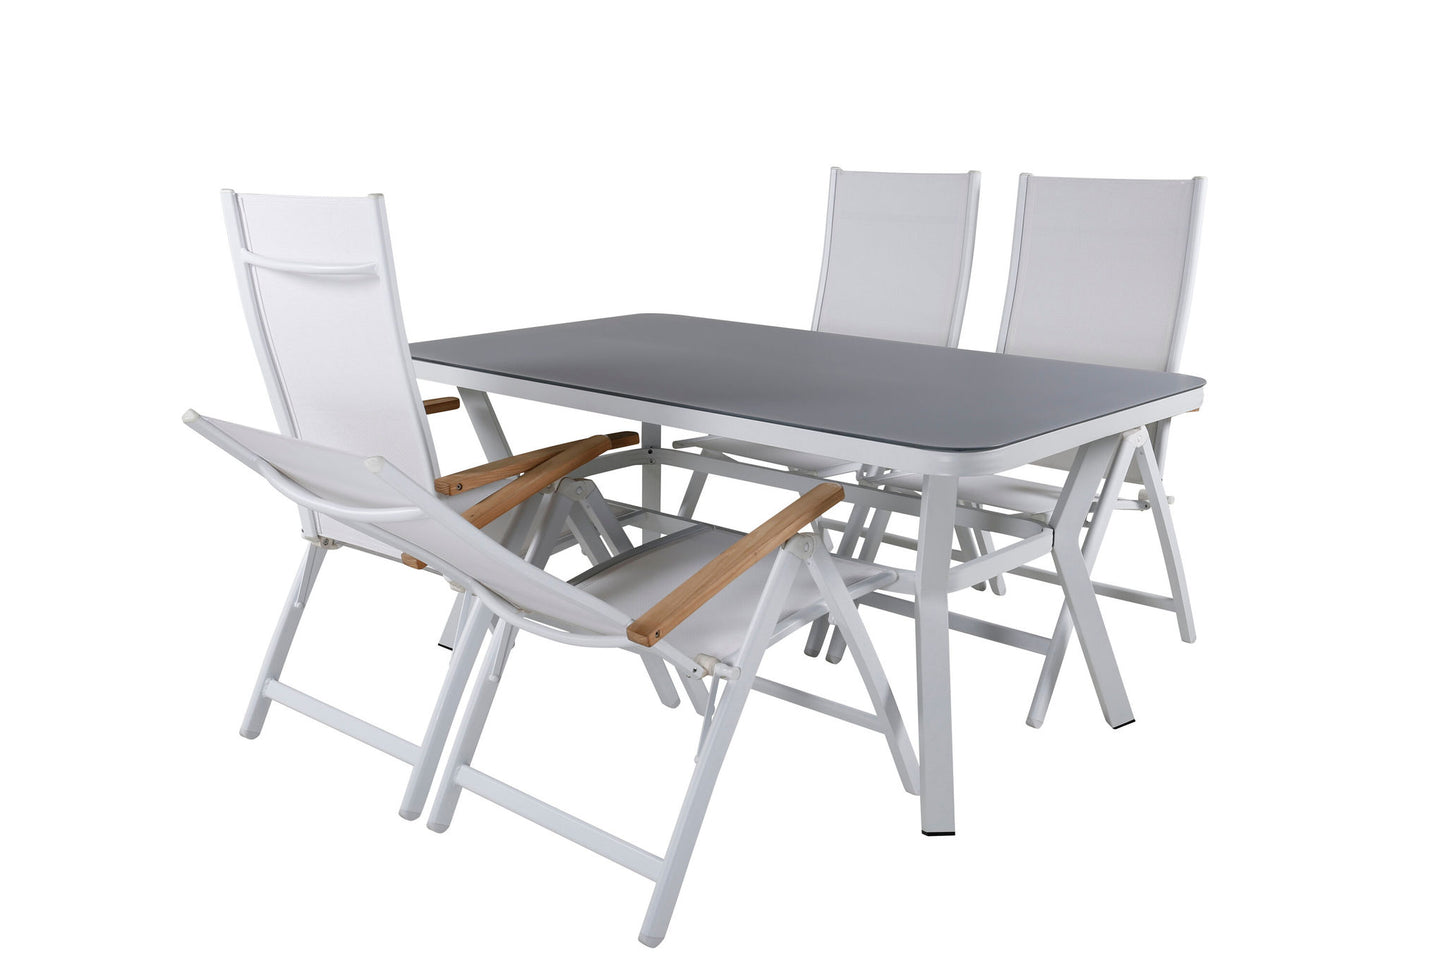 Virya - Spisebord, Hvid Alu / Grå glas - small table+ Panama Lys 5-pos Stol Hvid / Hvid